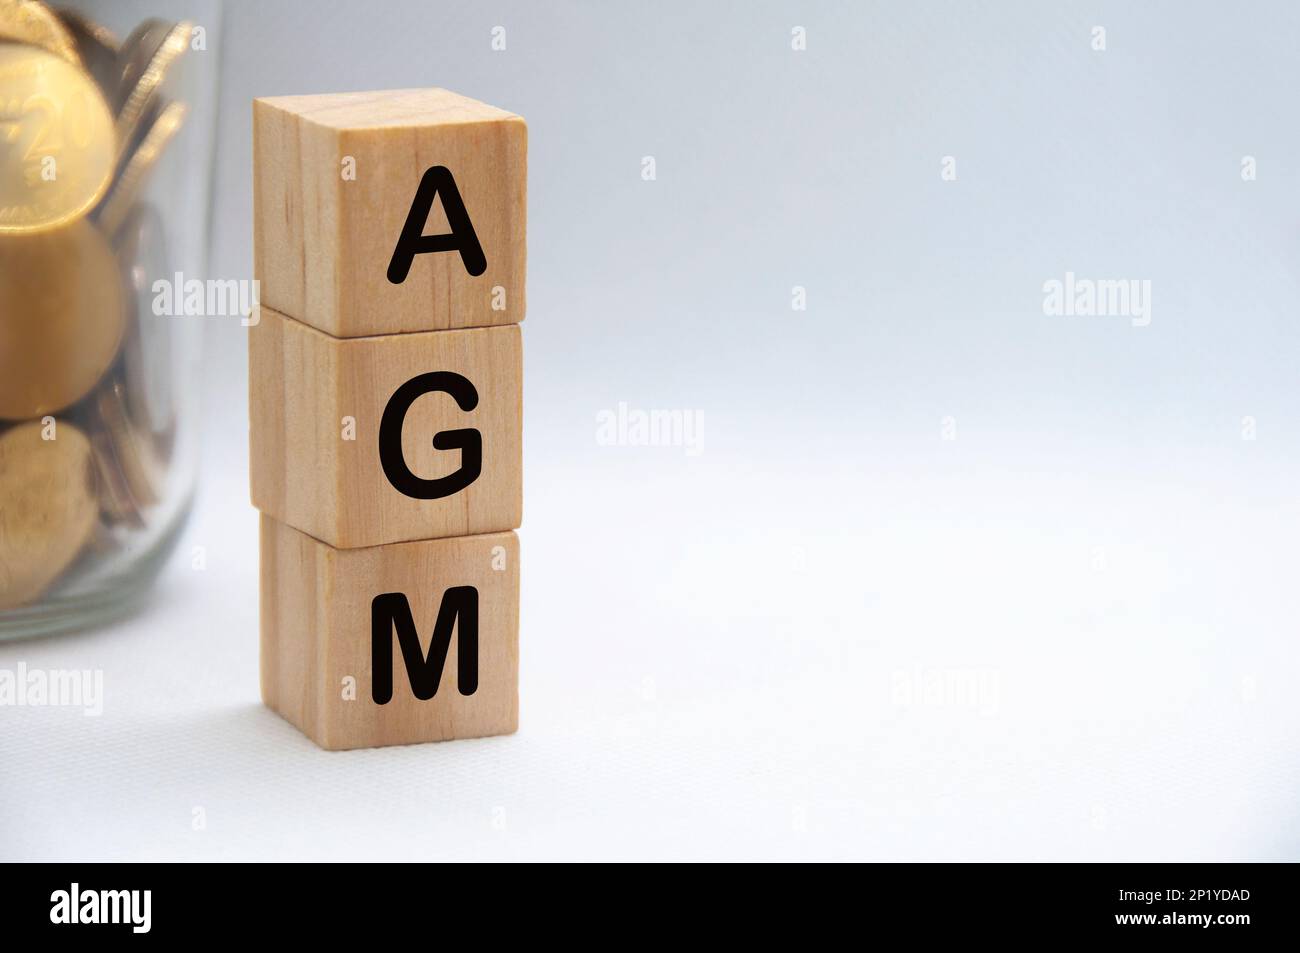 Testo AGM su blocchi di legno con sfondo bianco. Concetto di assemblea generale annuale. Foto Stock